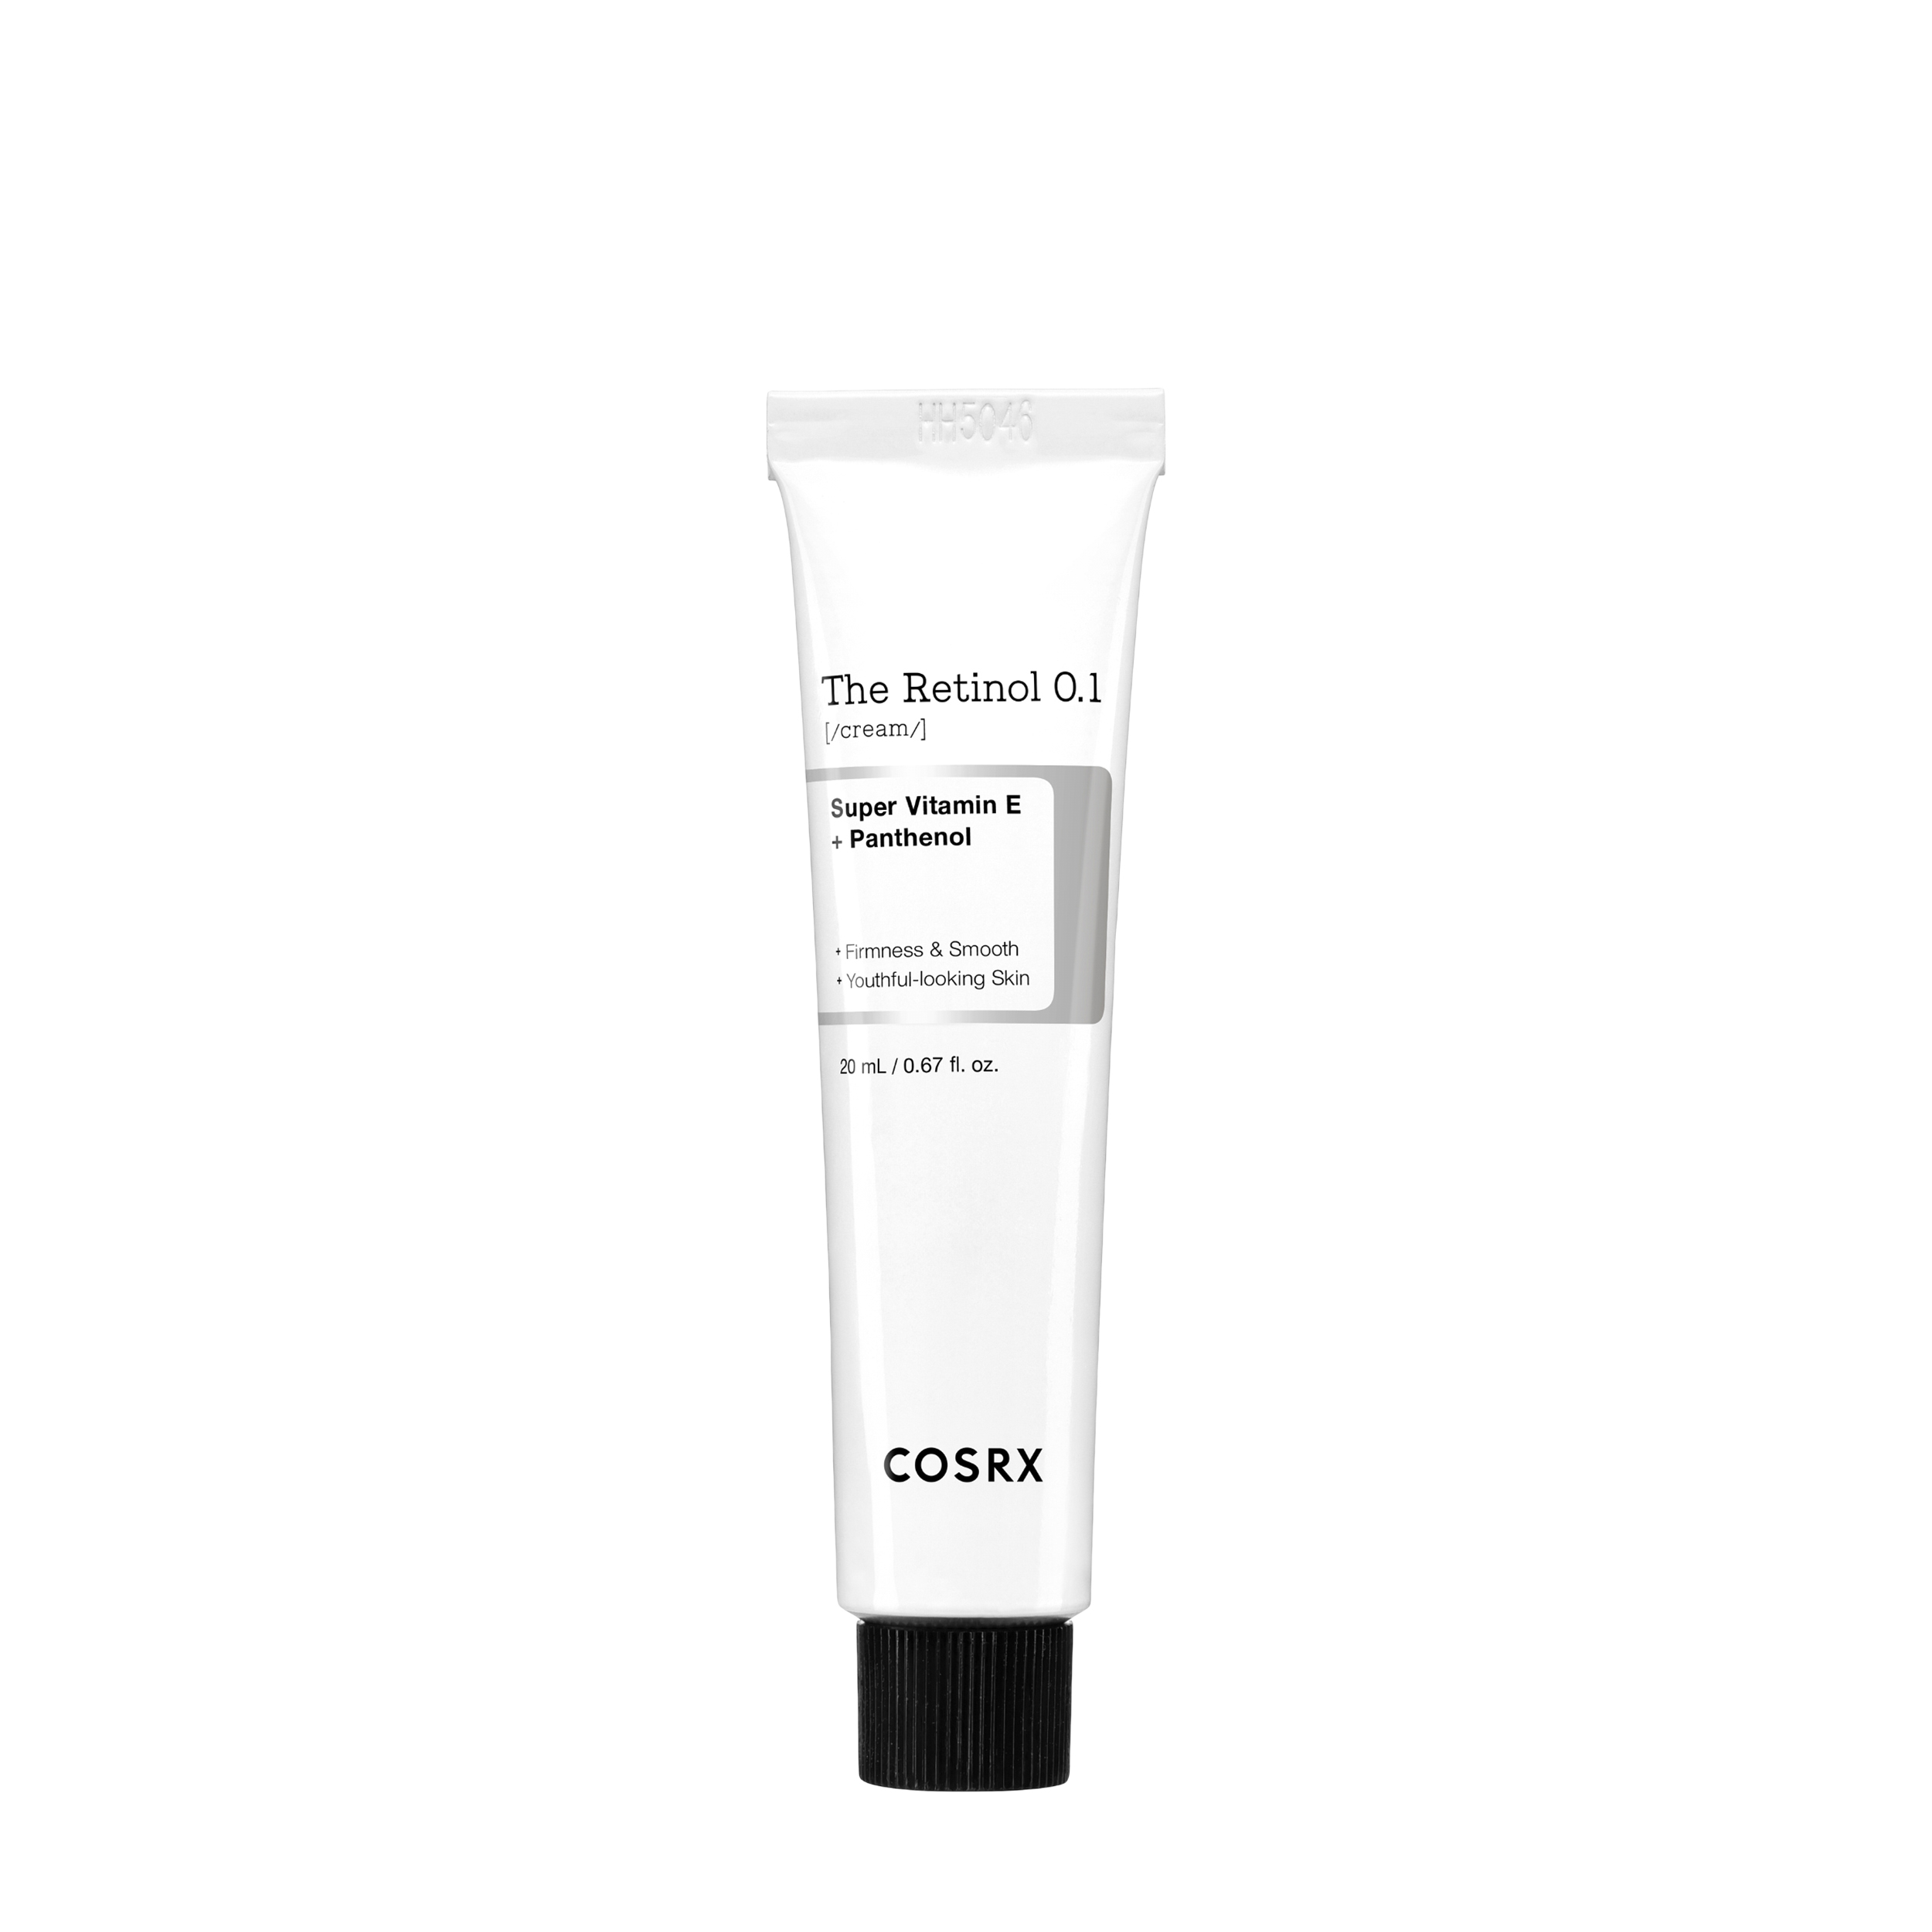 COSRX COSRX The Retinol 0.1 cream Успокаивающий   крем с 0,1% ретинола